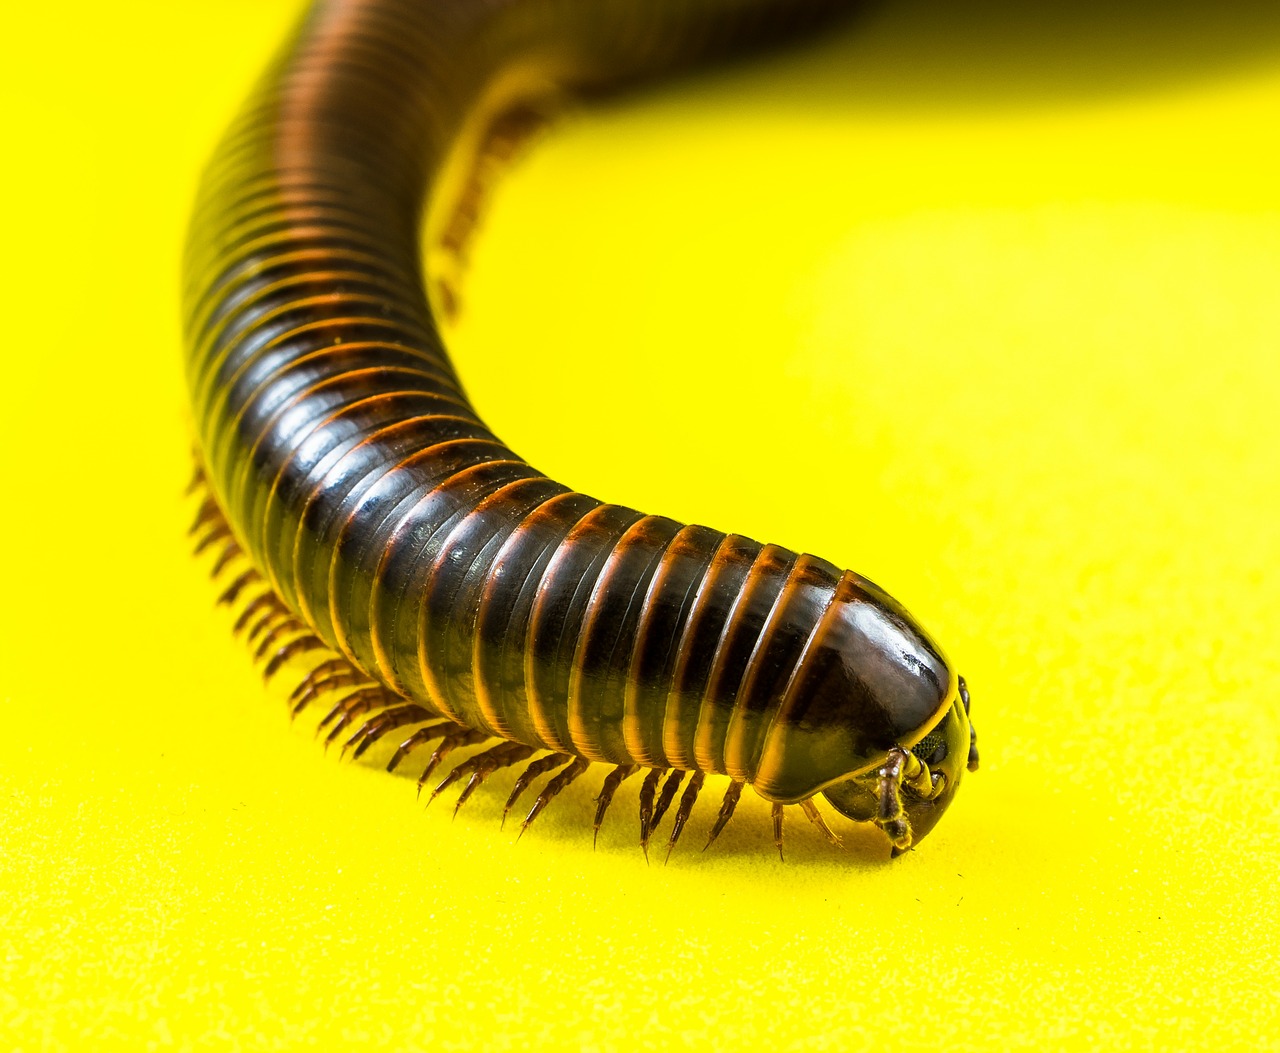 arthropod millipedes giant tausendfüßer free photo